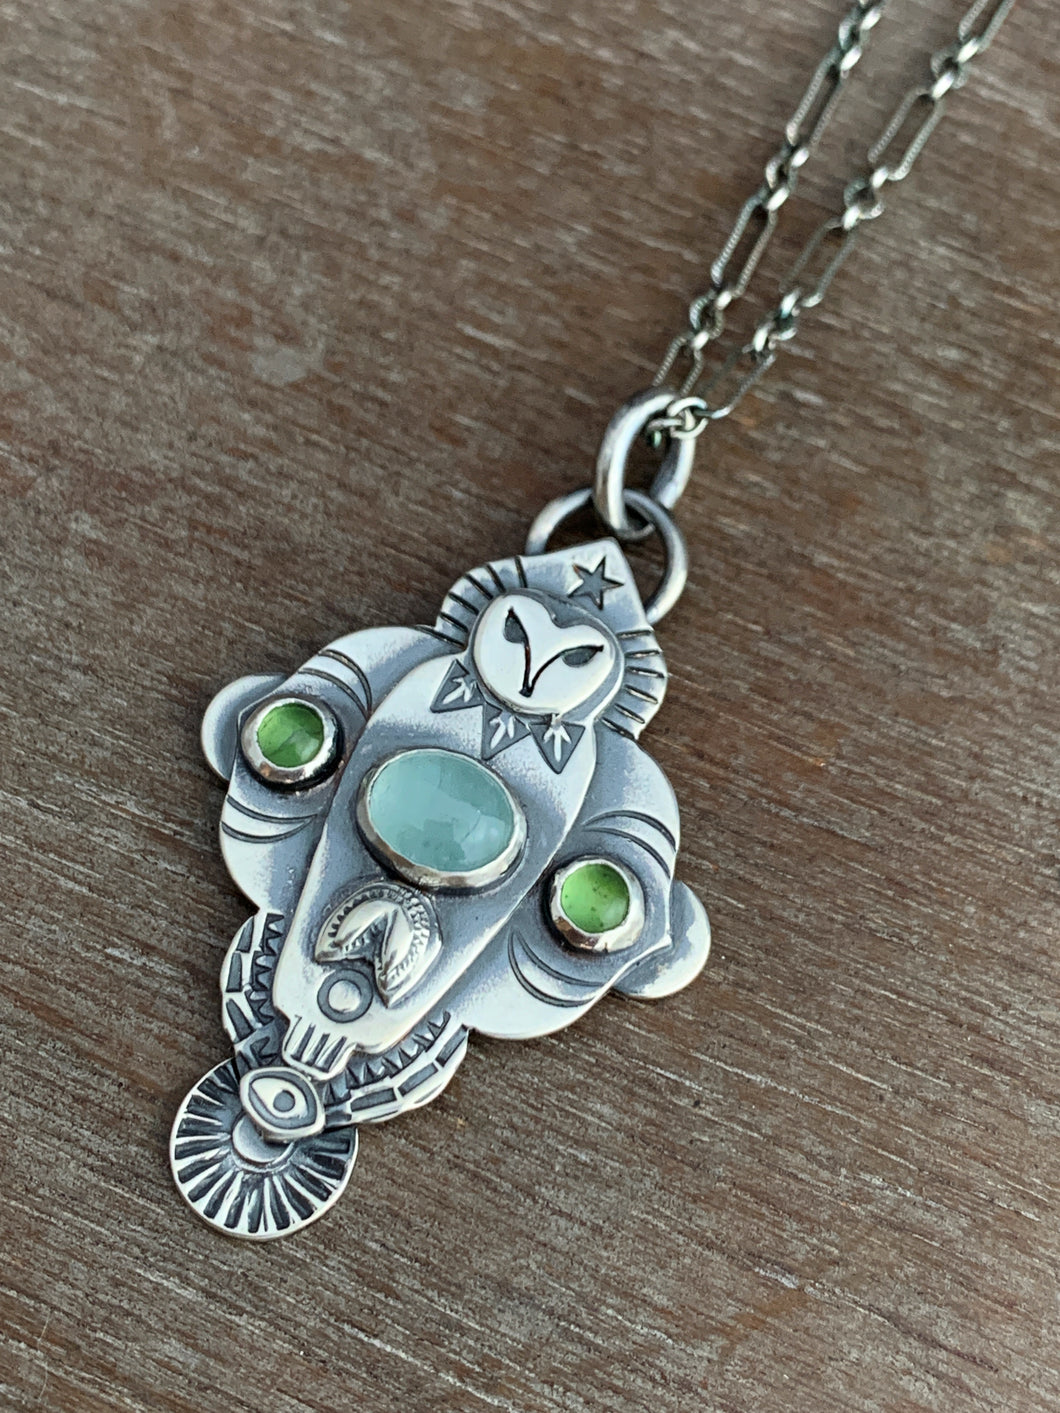 Owl pendant #9 -  Serpentine and Aquamarine